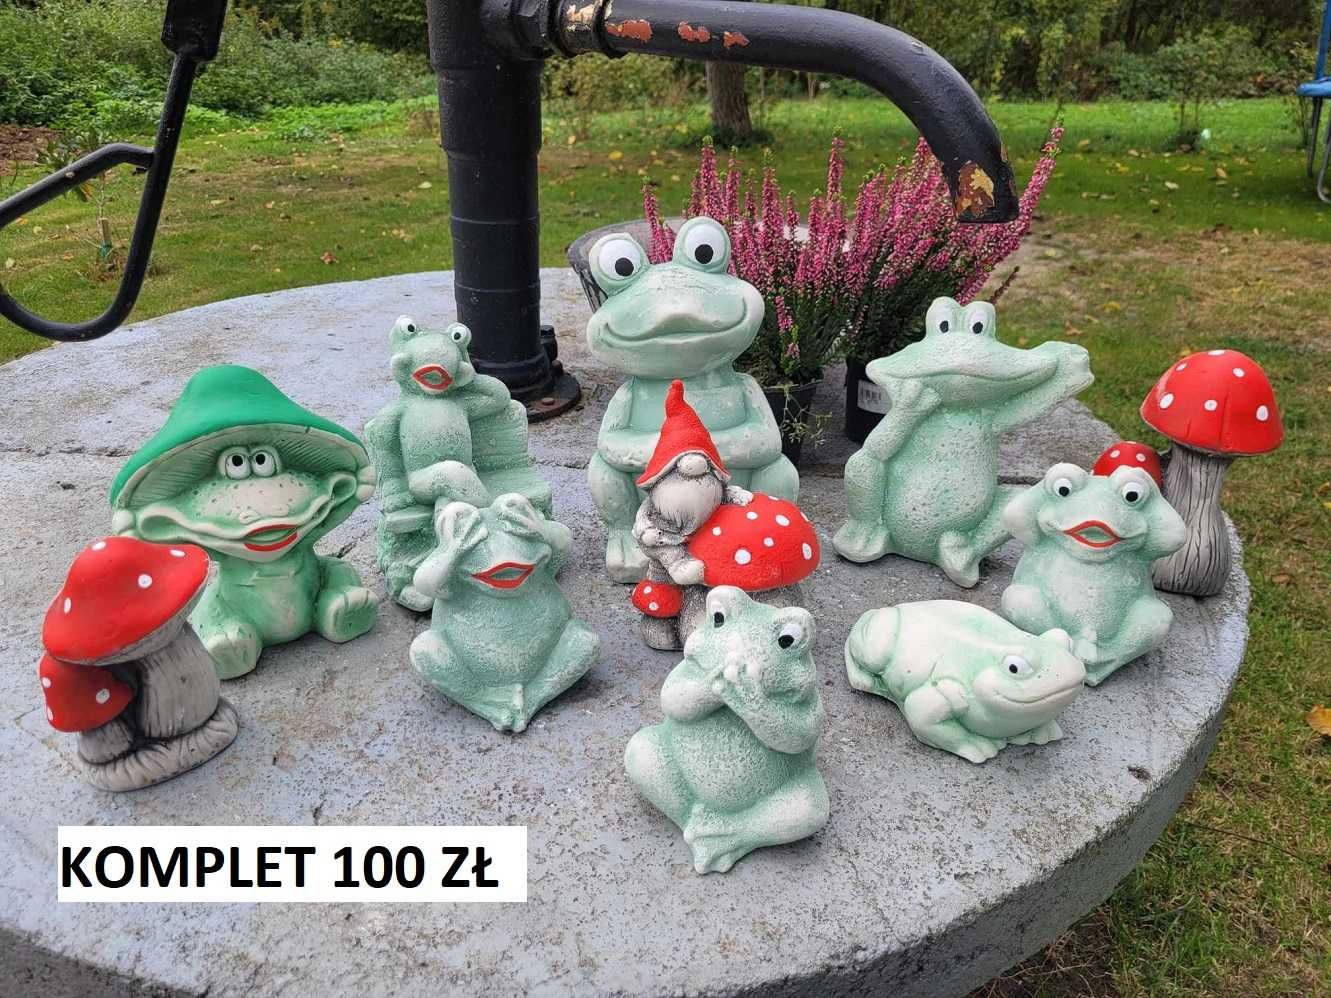 ogród dekoracja ogrodowa żaba skrzat krasnal koty gipsowe krasnale  3d